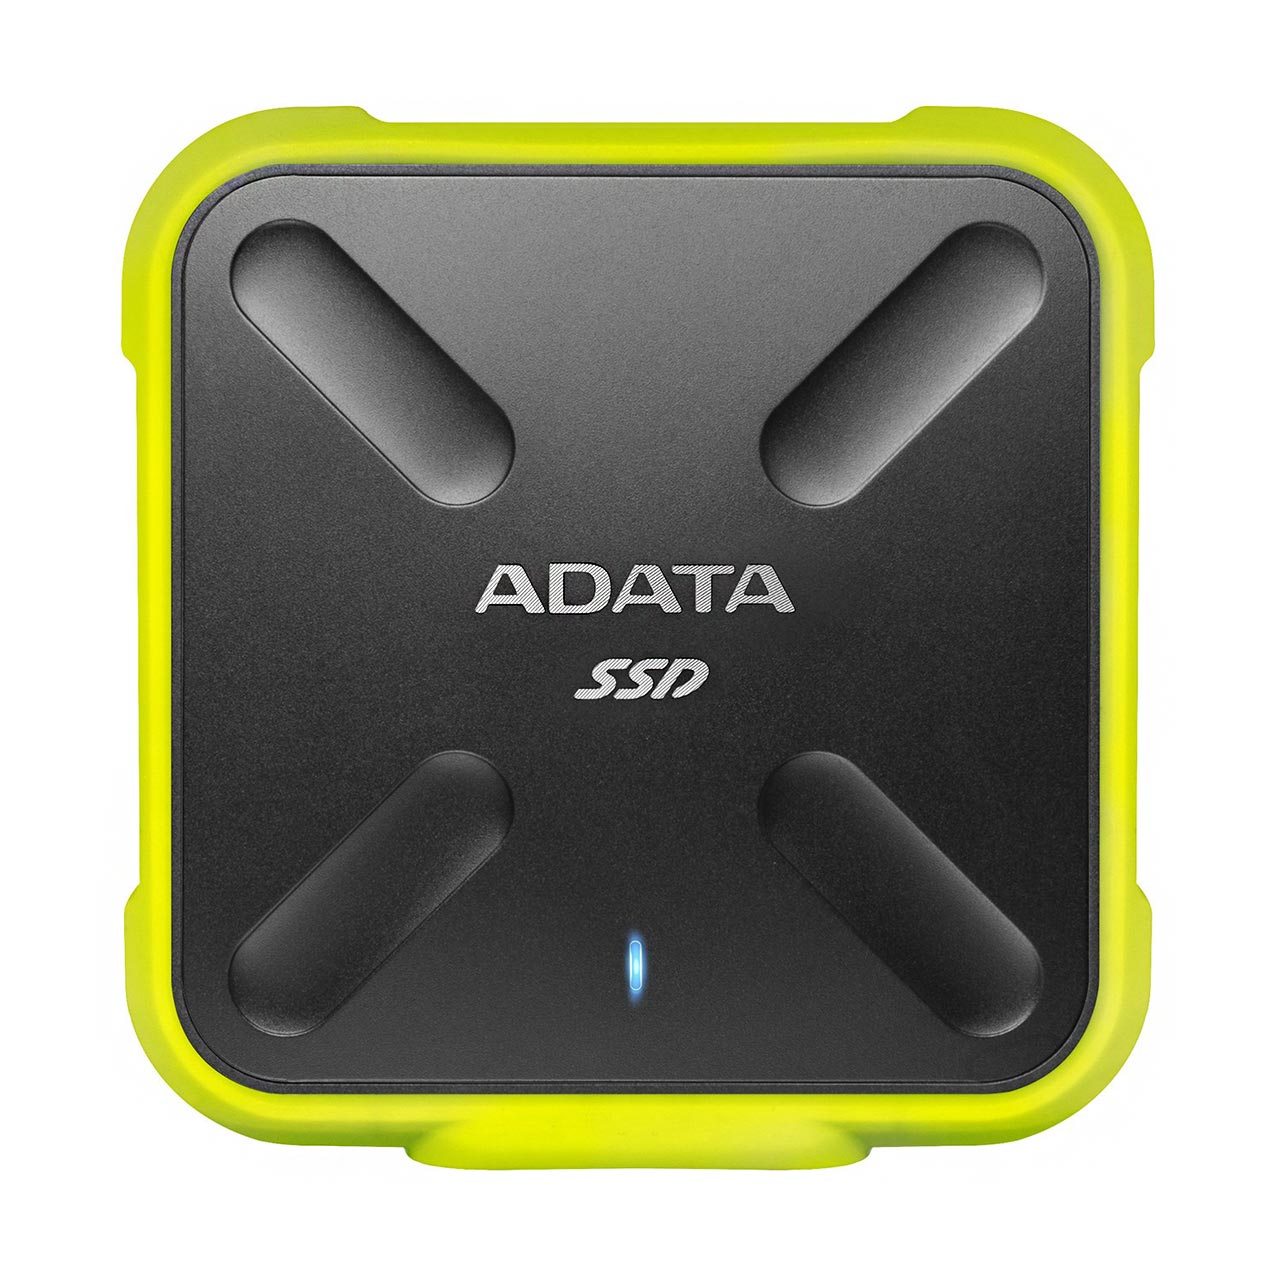 حافظه SSD برند ADATA مدل SD700 ظرفیت 256GB 

ADATA SD700 256GB SSD